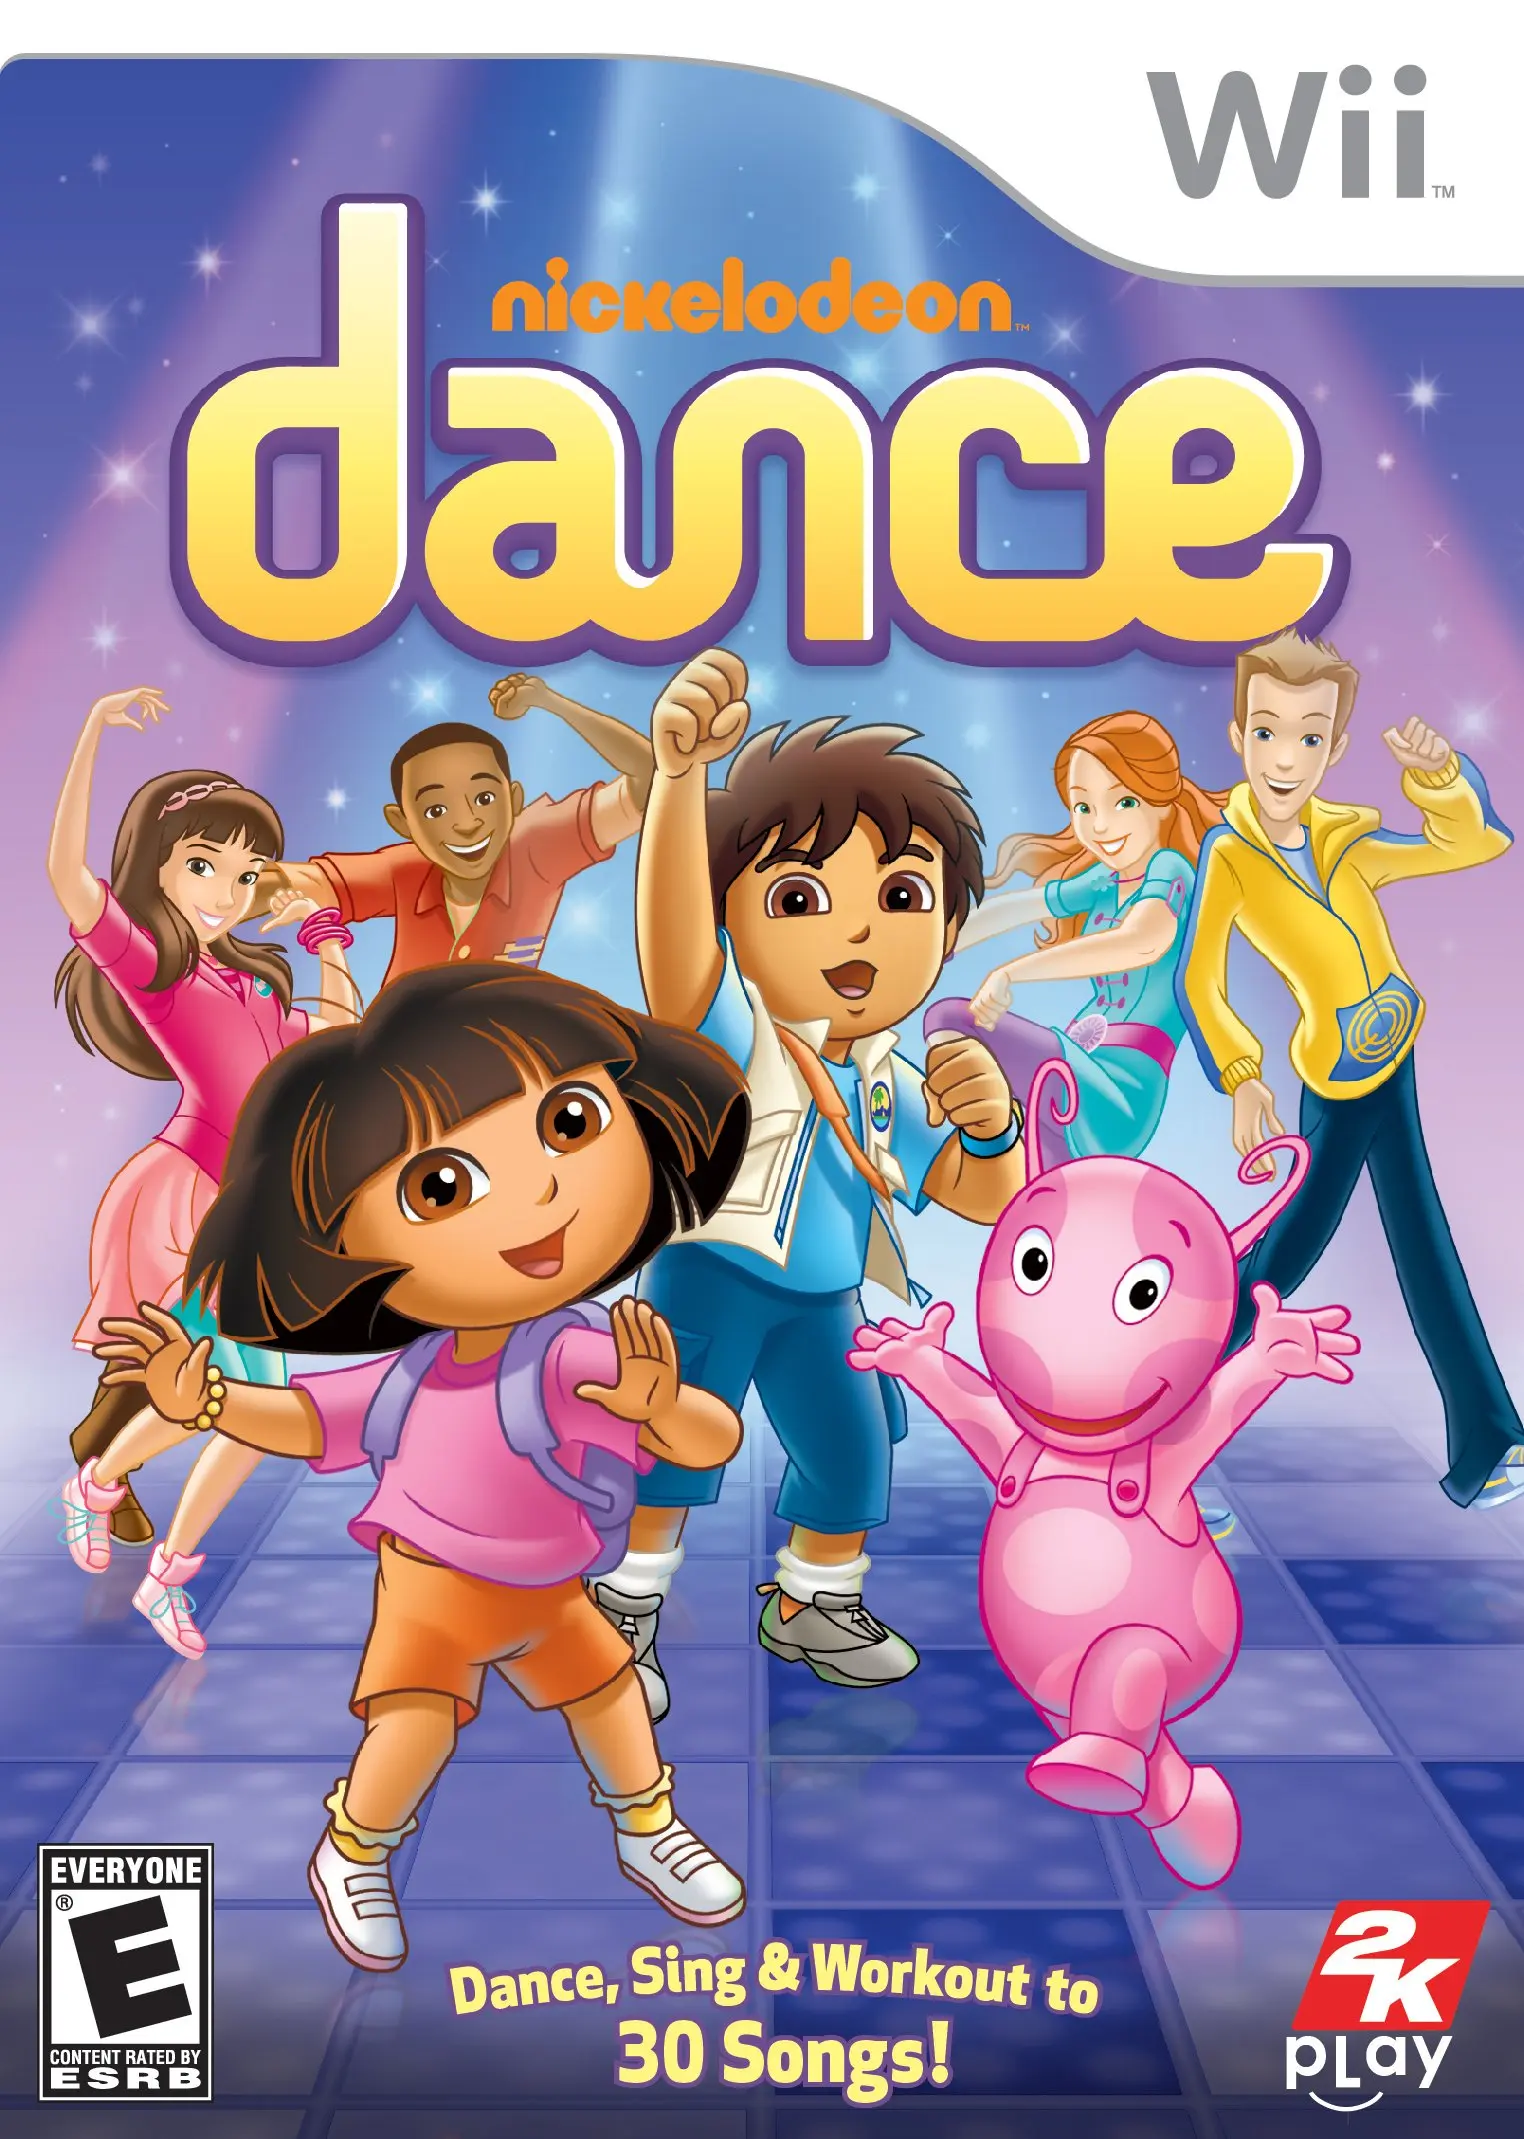 juegos baile wii - Qué se necesita para jugar al Just Dance en la Wii